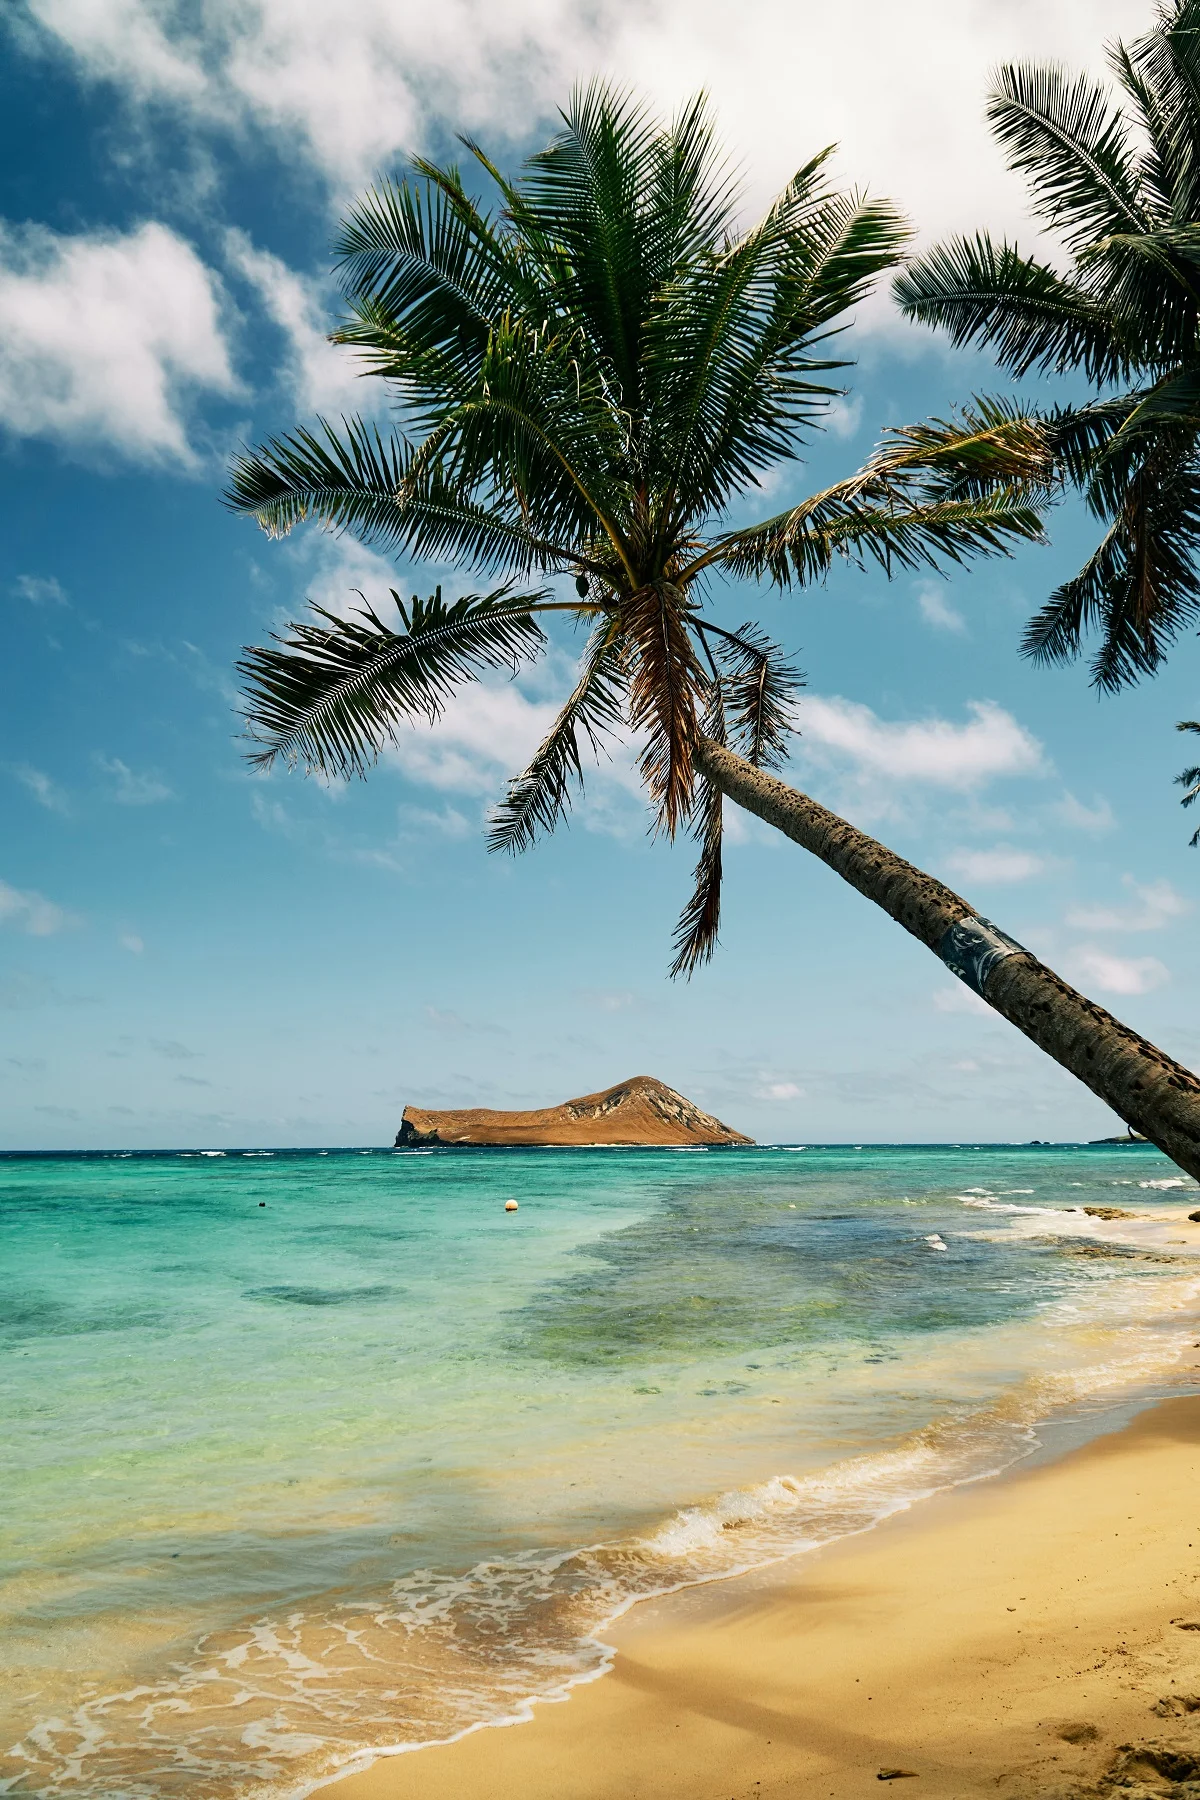 Райское место: на Гавайях начнут раздавать деньги, чтобы жители ходили в рестораны - фото 492944